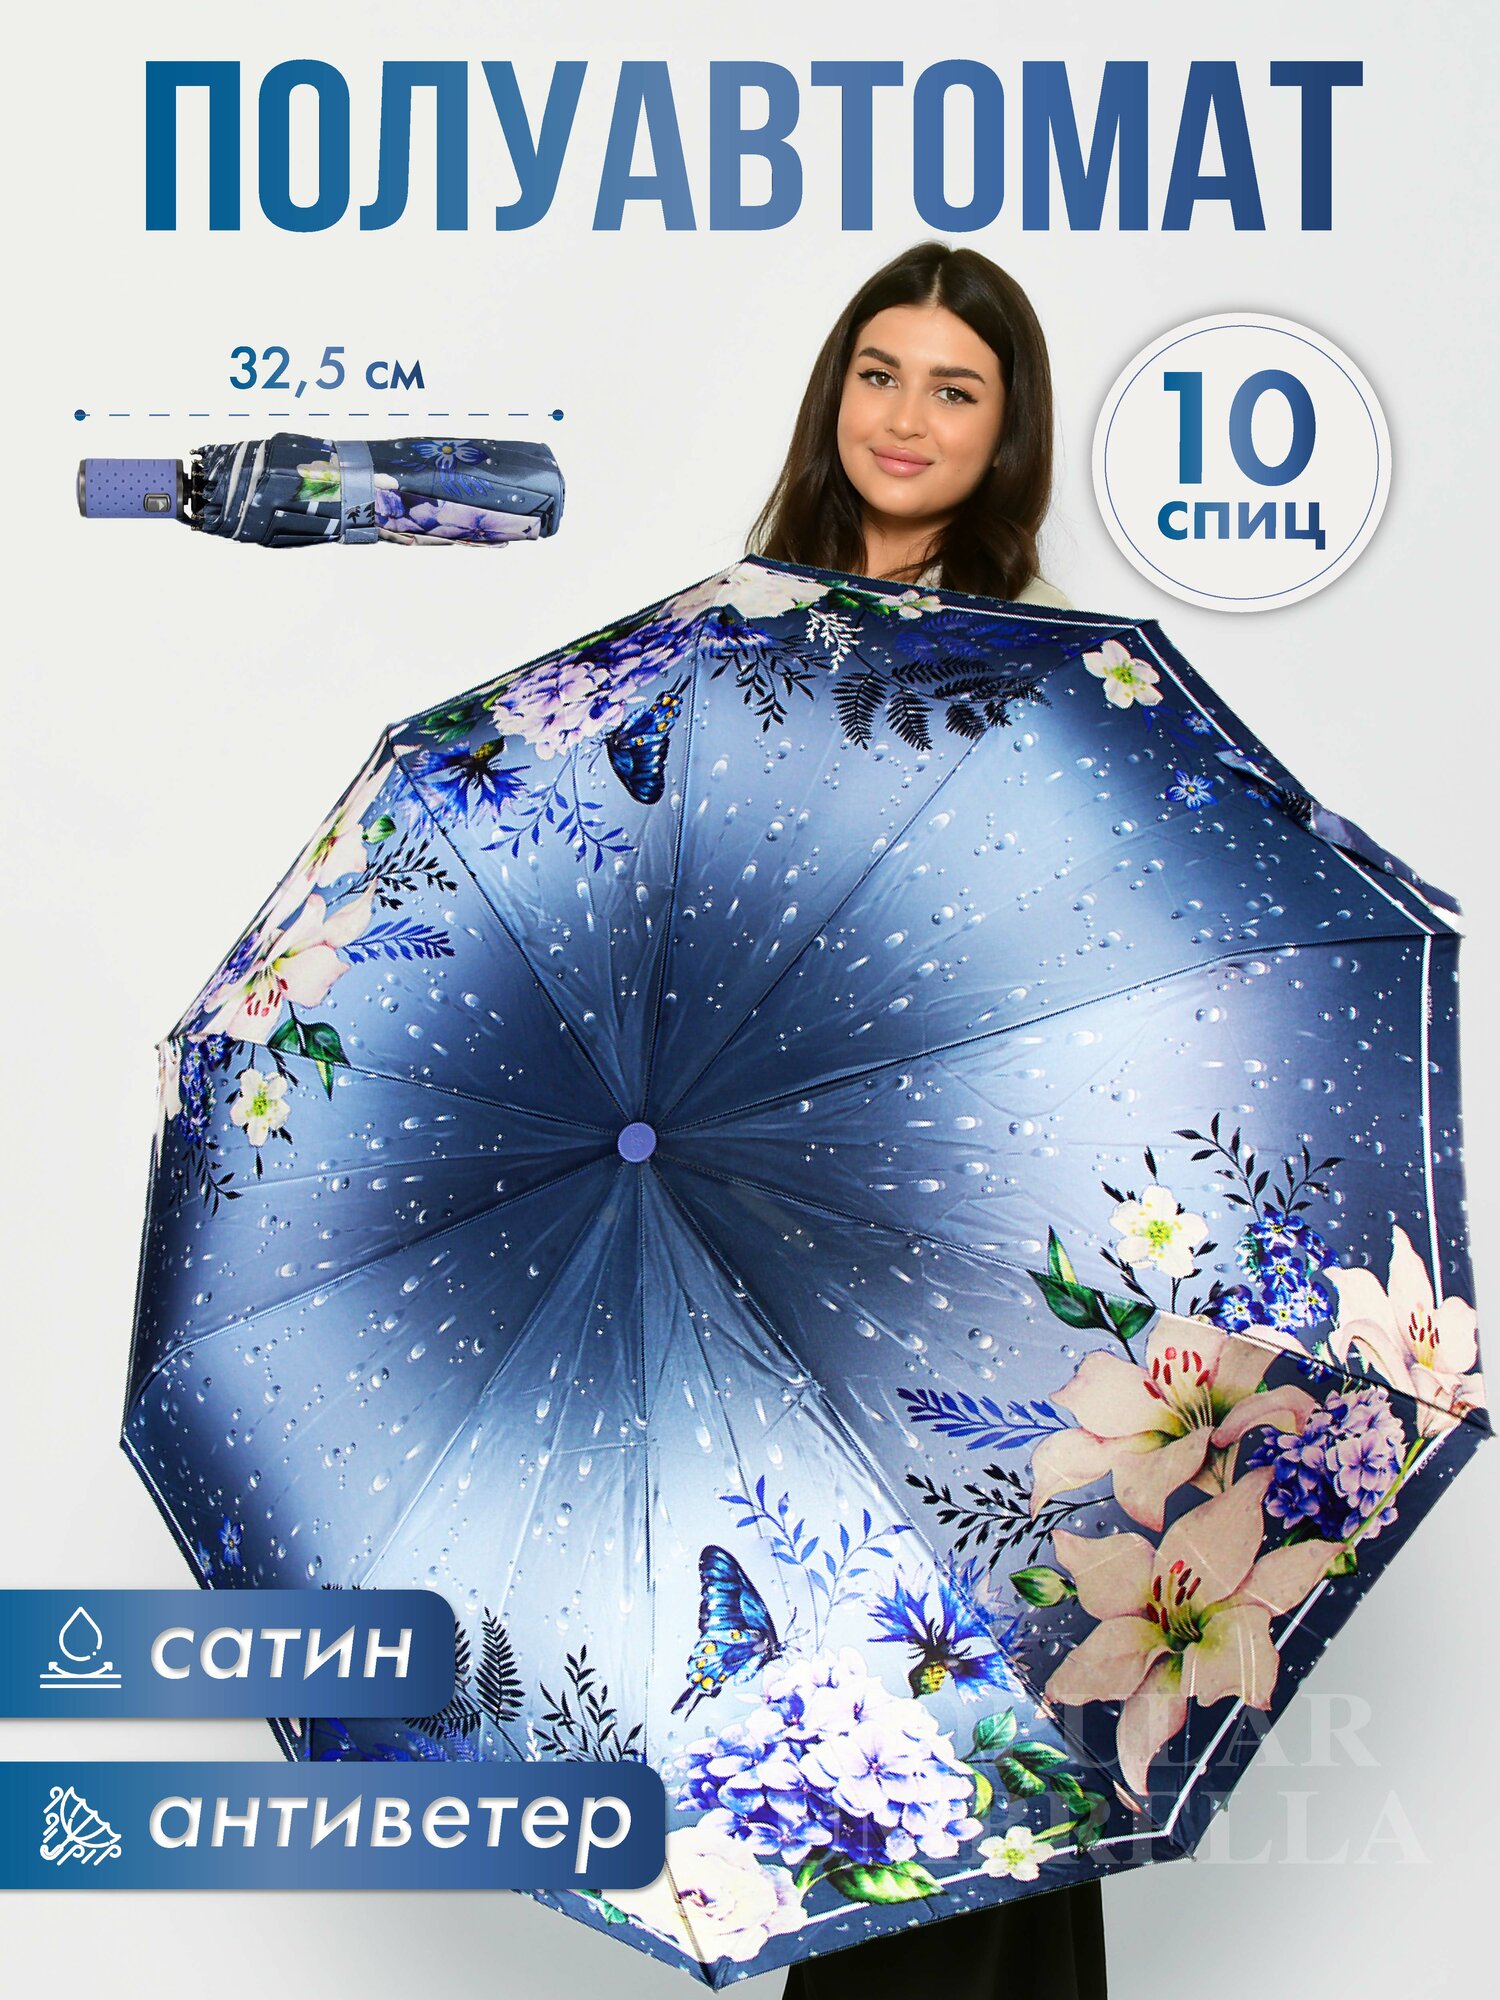 Зонт Popular